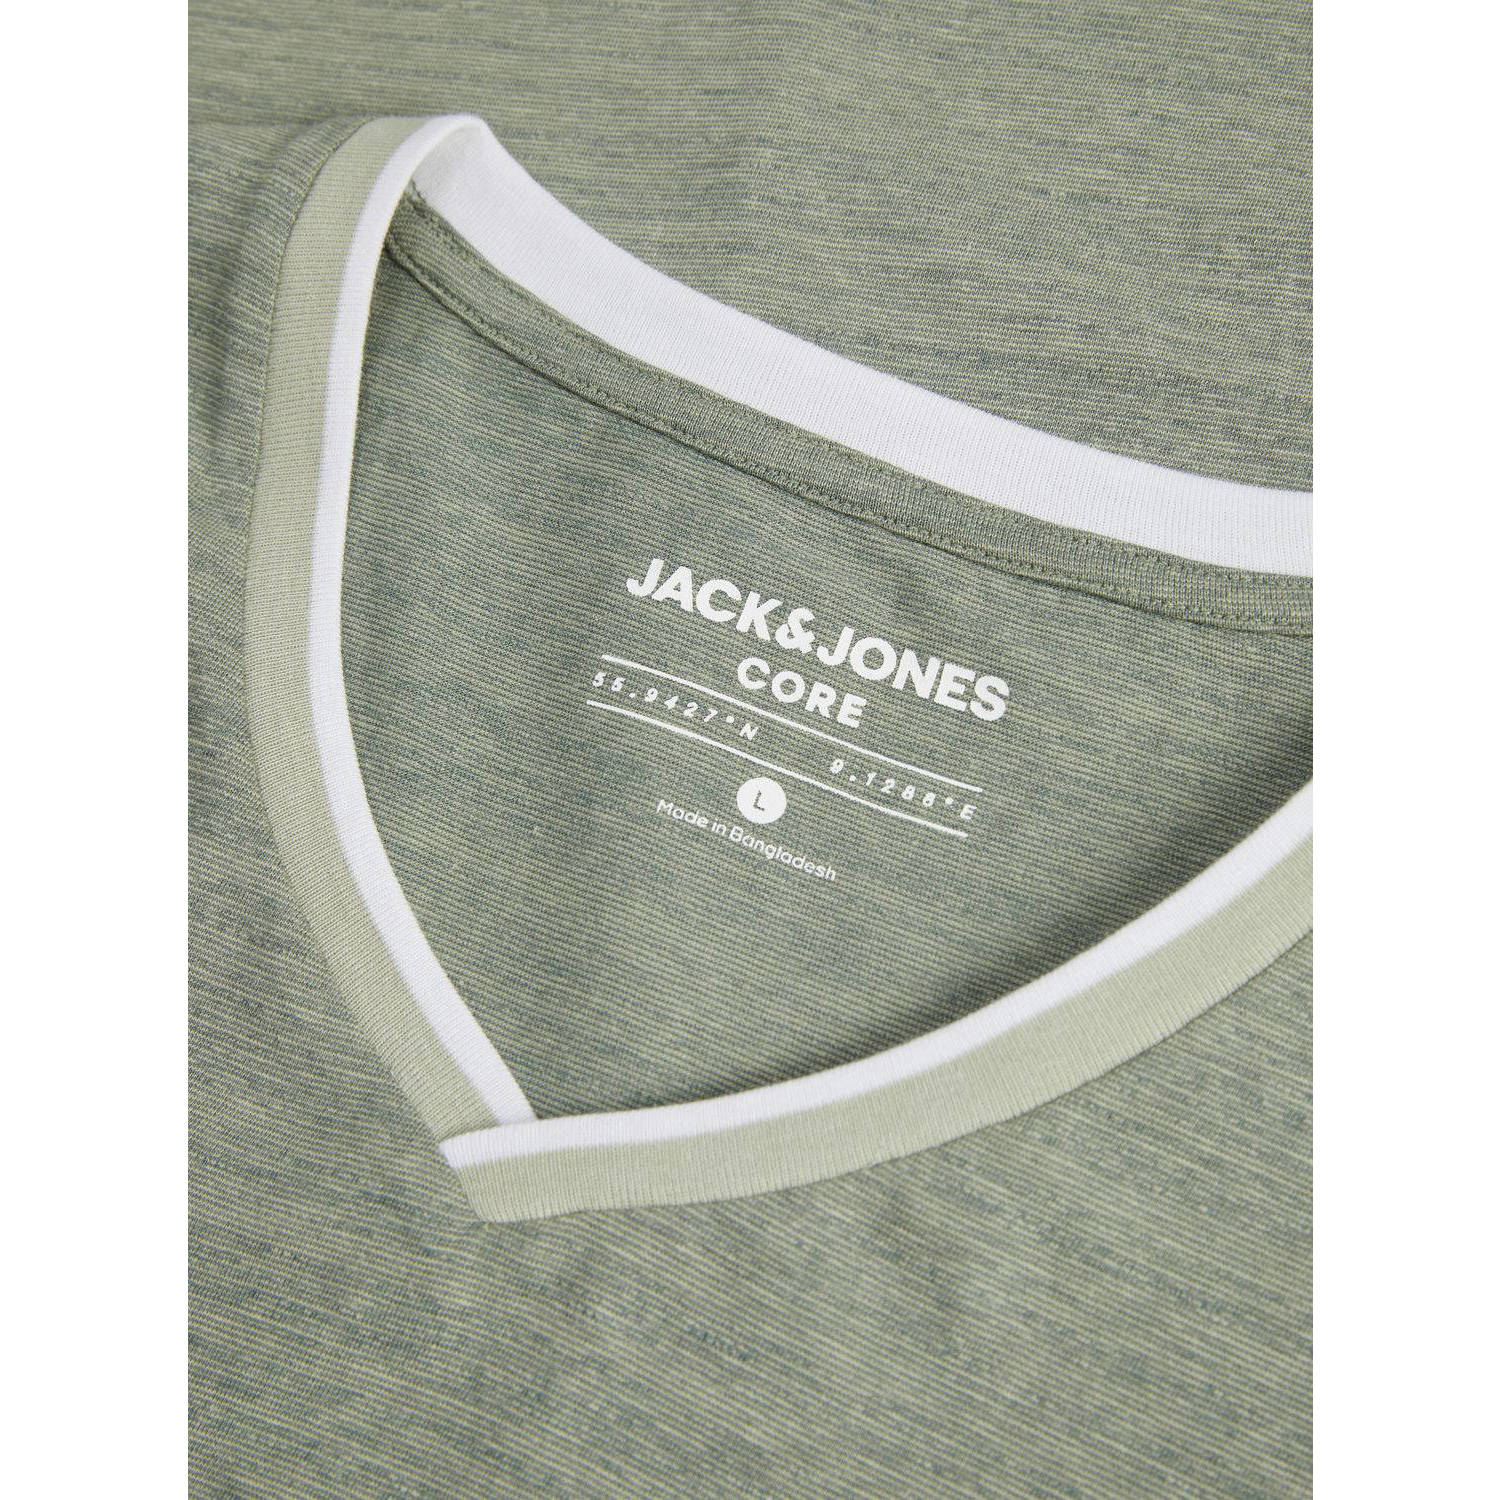 JACK & JONES CORE regular fit T-shirt JCOCONTRAST met logo groen